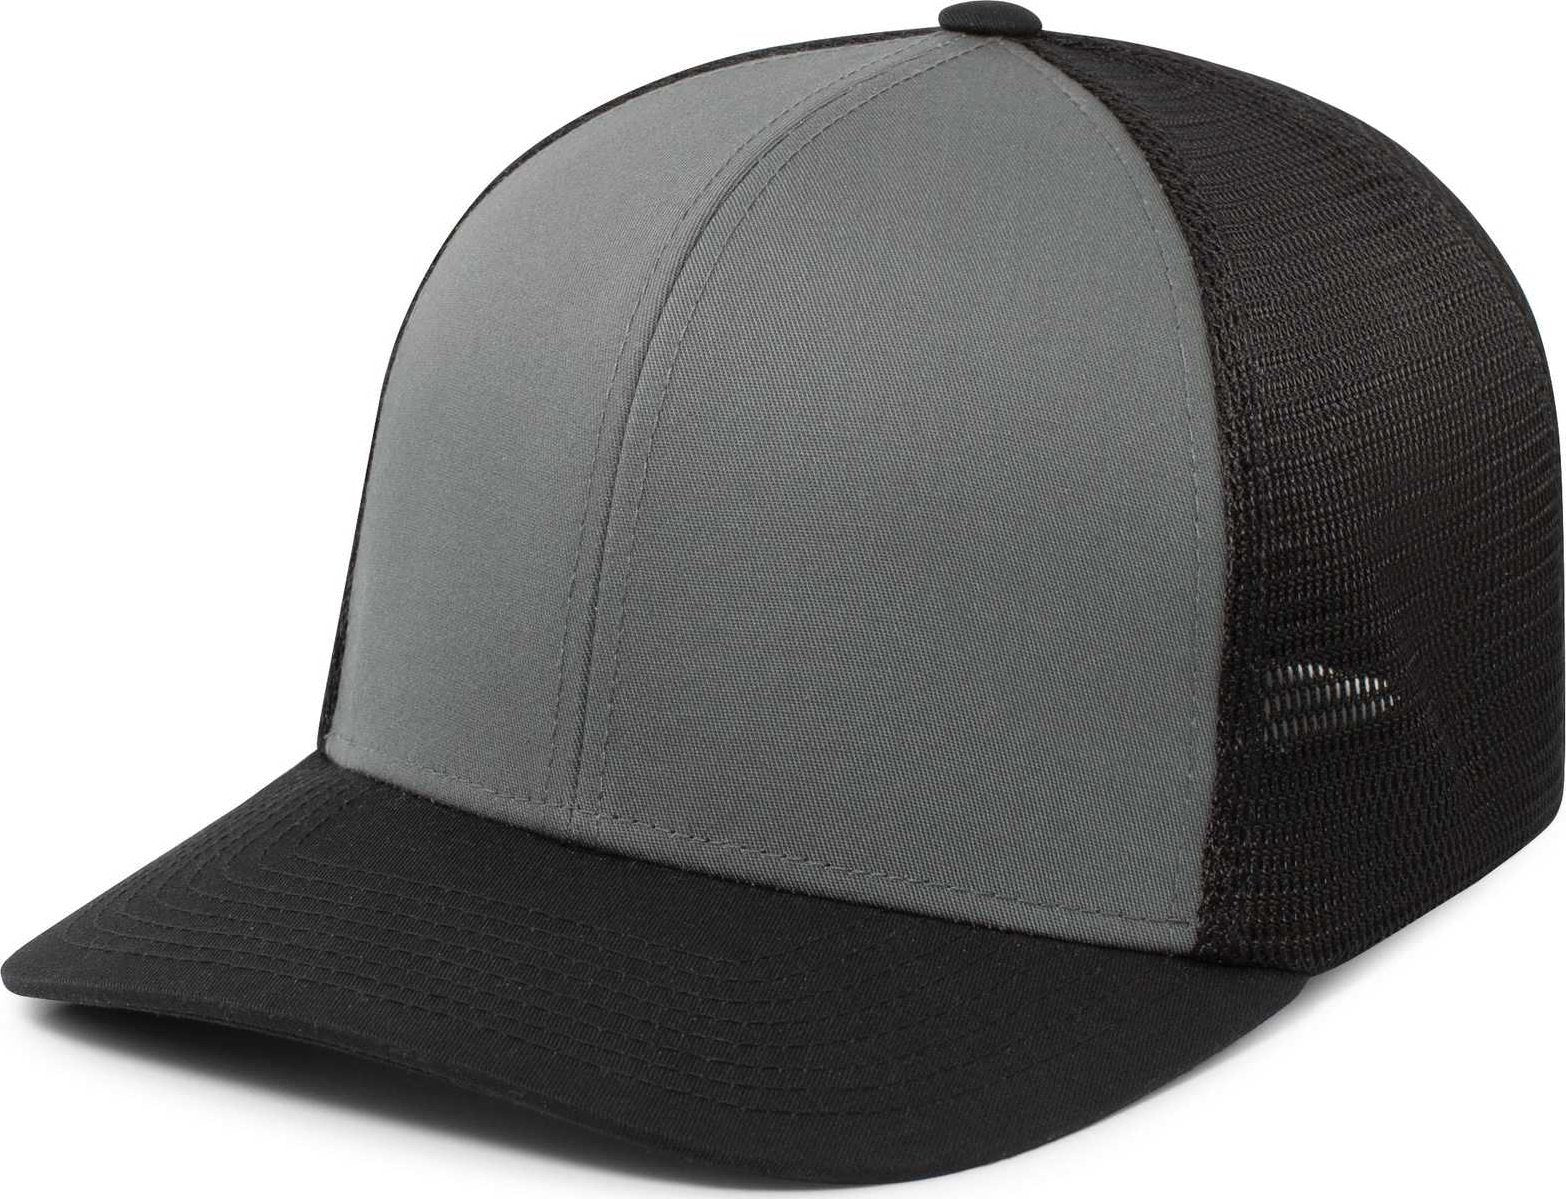 Pacific Headwear P401 Fusion Trucker Cap - Graphite Black Black - HIT a Double